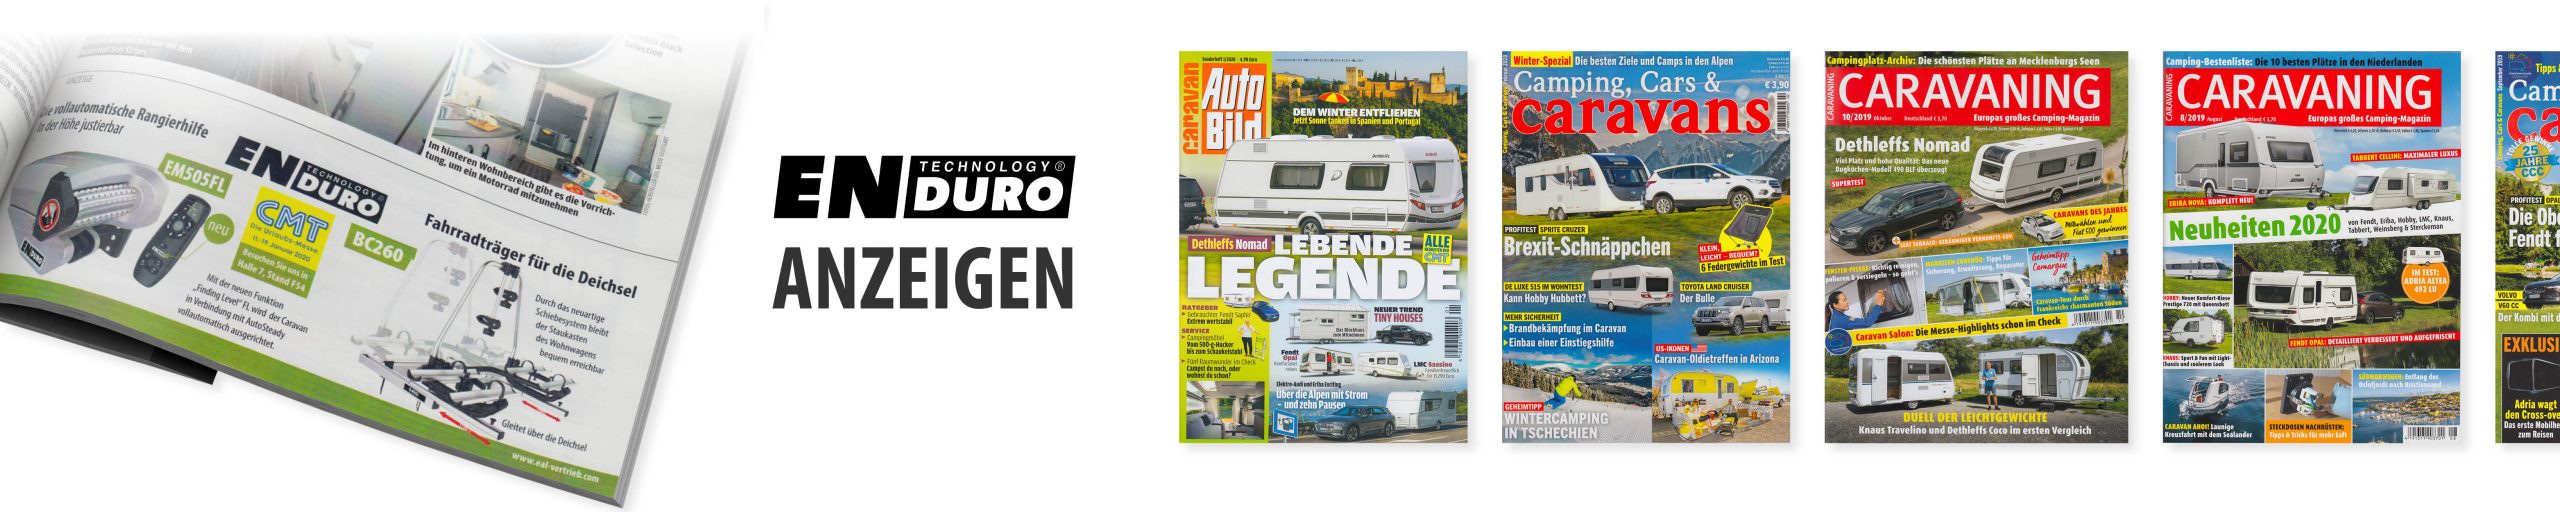 Verschiedene Magazine über das Thema Camping und eine Anzeige für Enduro Rangierhilfen